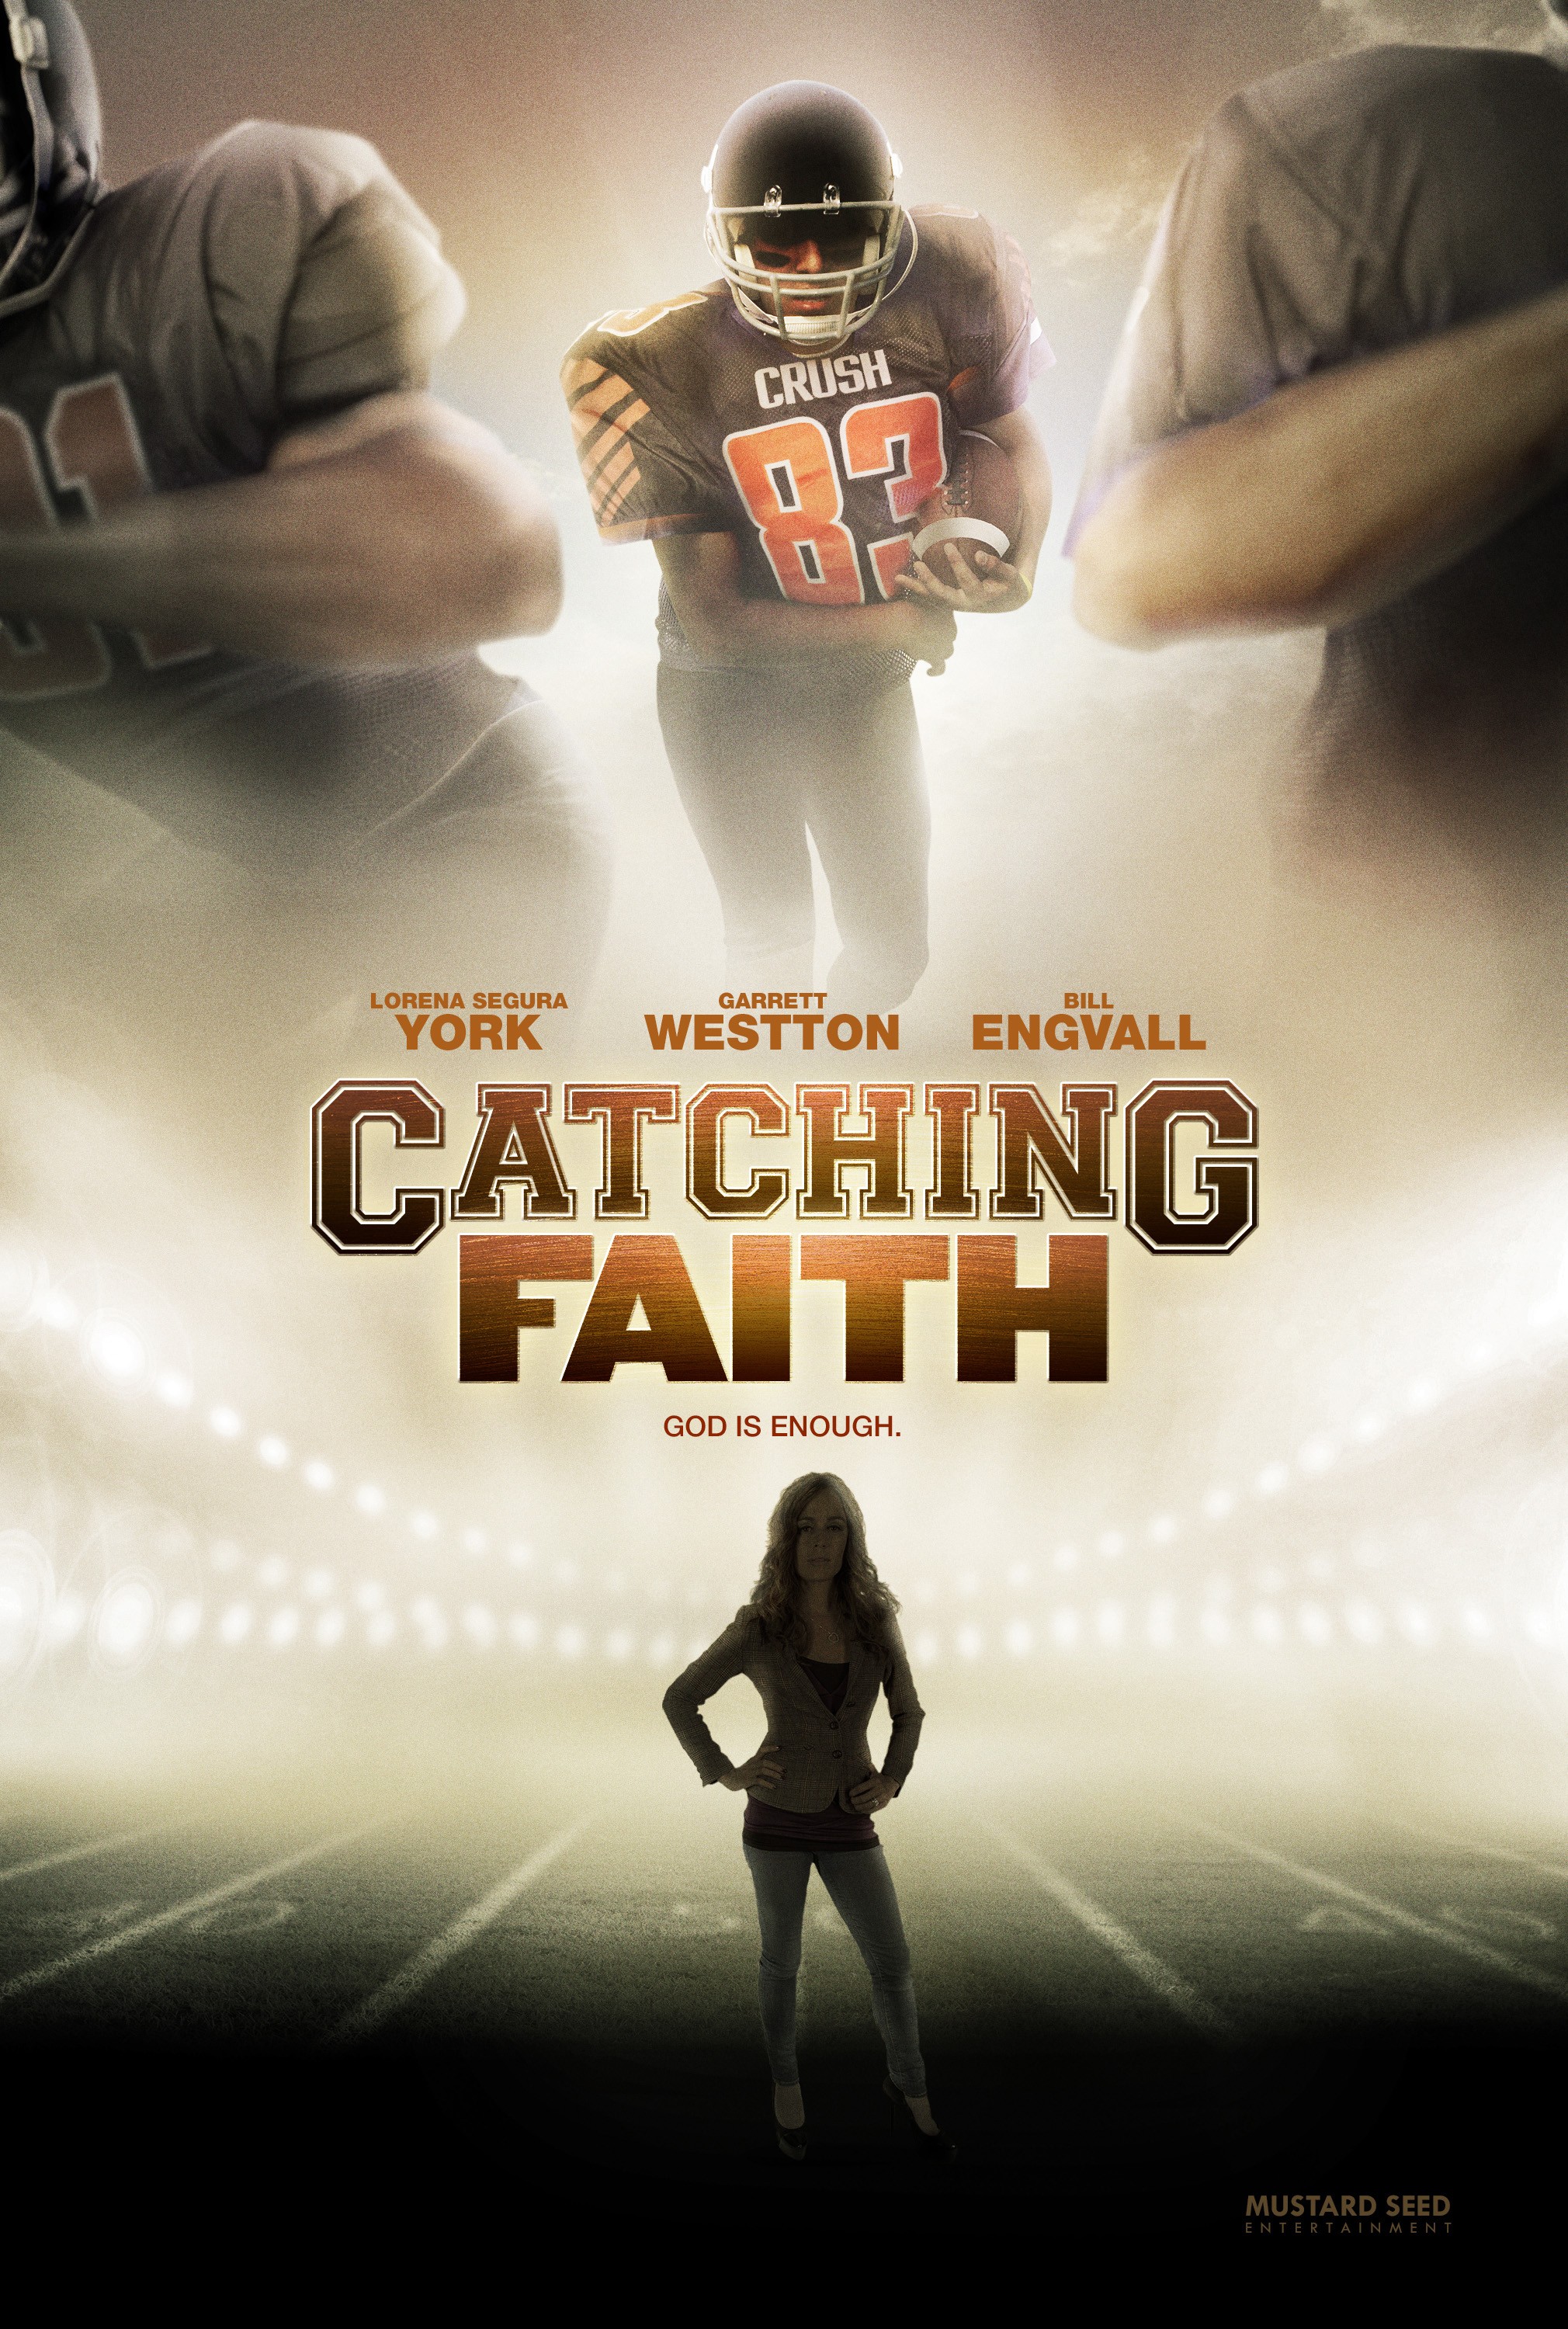 Catching Faith (#1 of 3): Mega Sized Movie Poster Image - IMP Awards